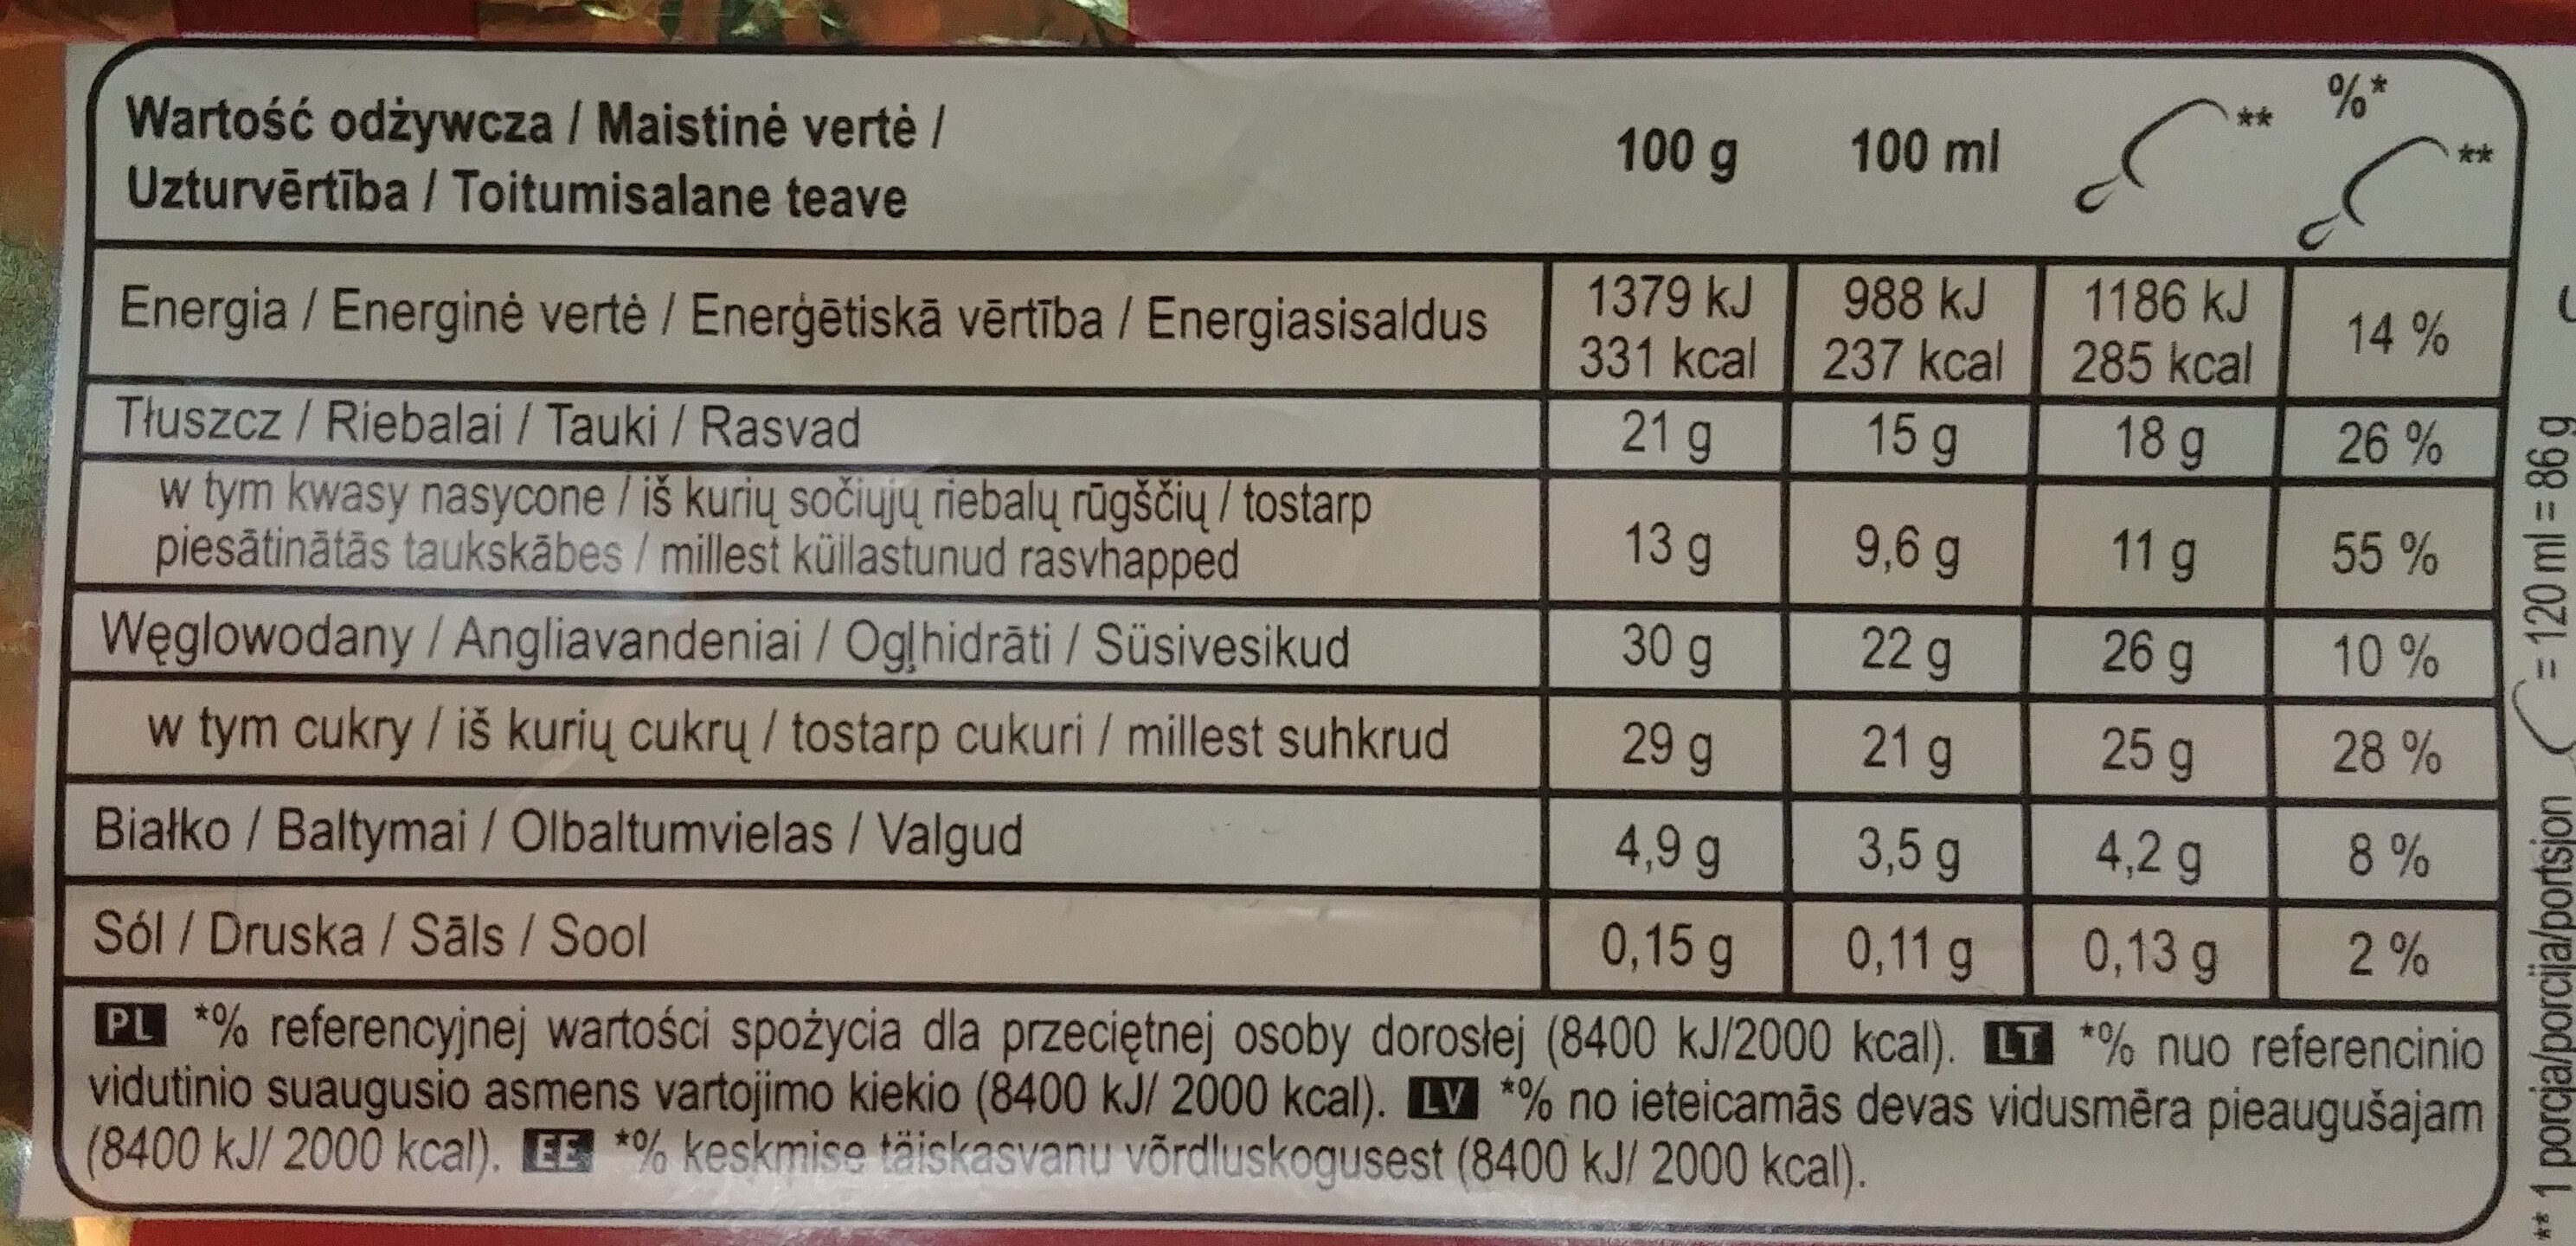 Lody z wanilią z Madagaskaru w polewie z mlecznej czekoladzie 28% i migdałami 5% - Wartości odżywcze